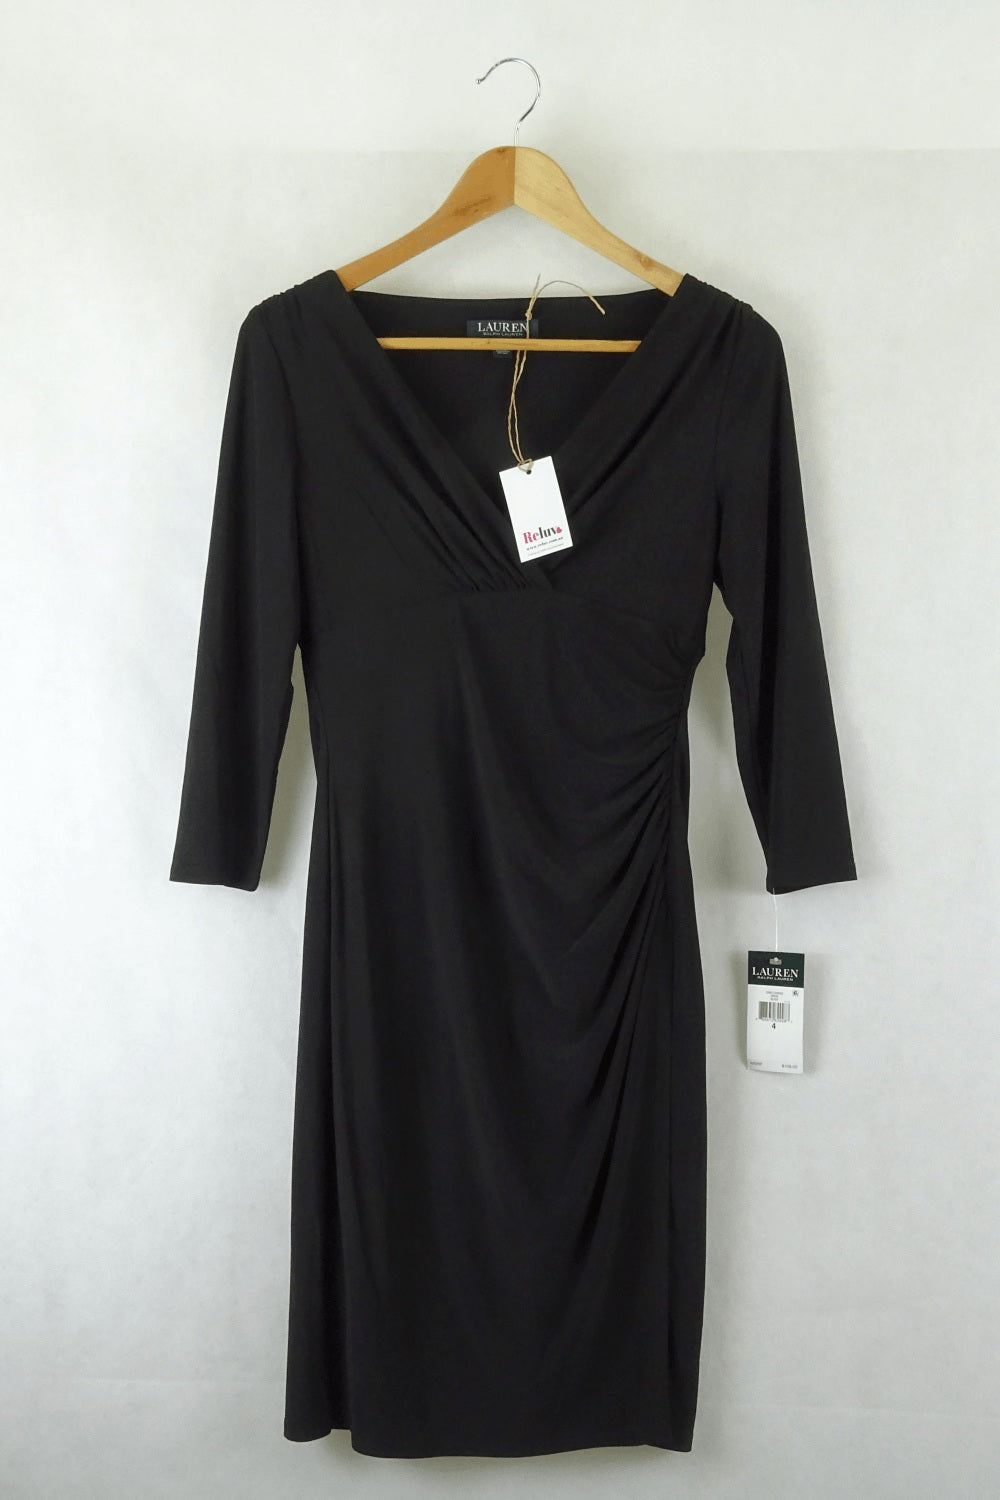 Ralph Lauren Black Dress S